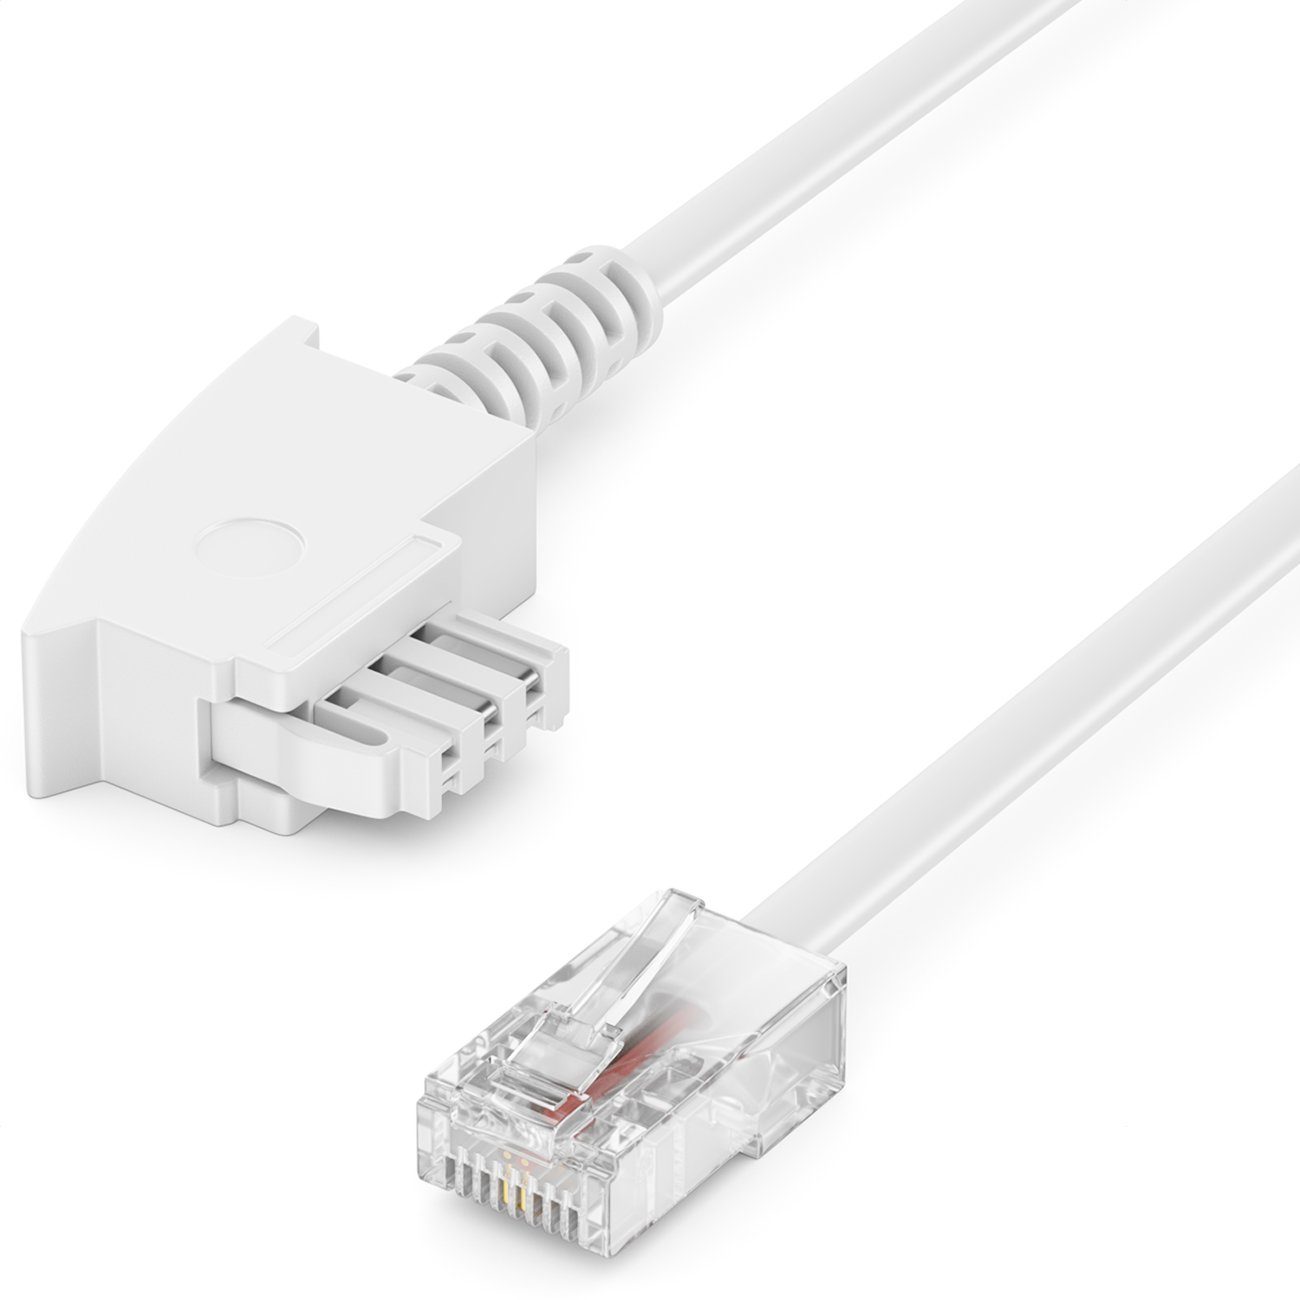 deleyCON deleyCON 2m TAE Anschlusskabel Routerkabel TAE-F auf RJ45 Stecker  DSL LAN-Kabel, deleyCON Routerkabel // Router an TAE Telefondose //  Fritzbox kompatibel